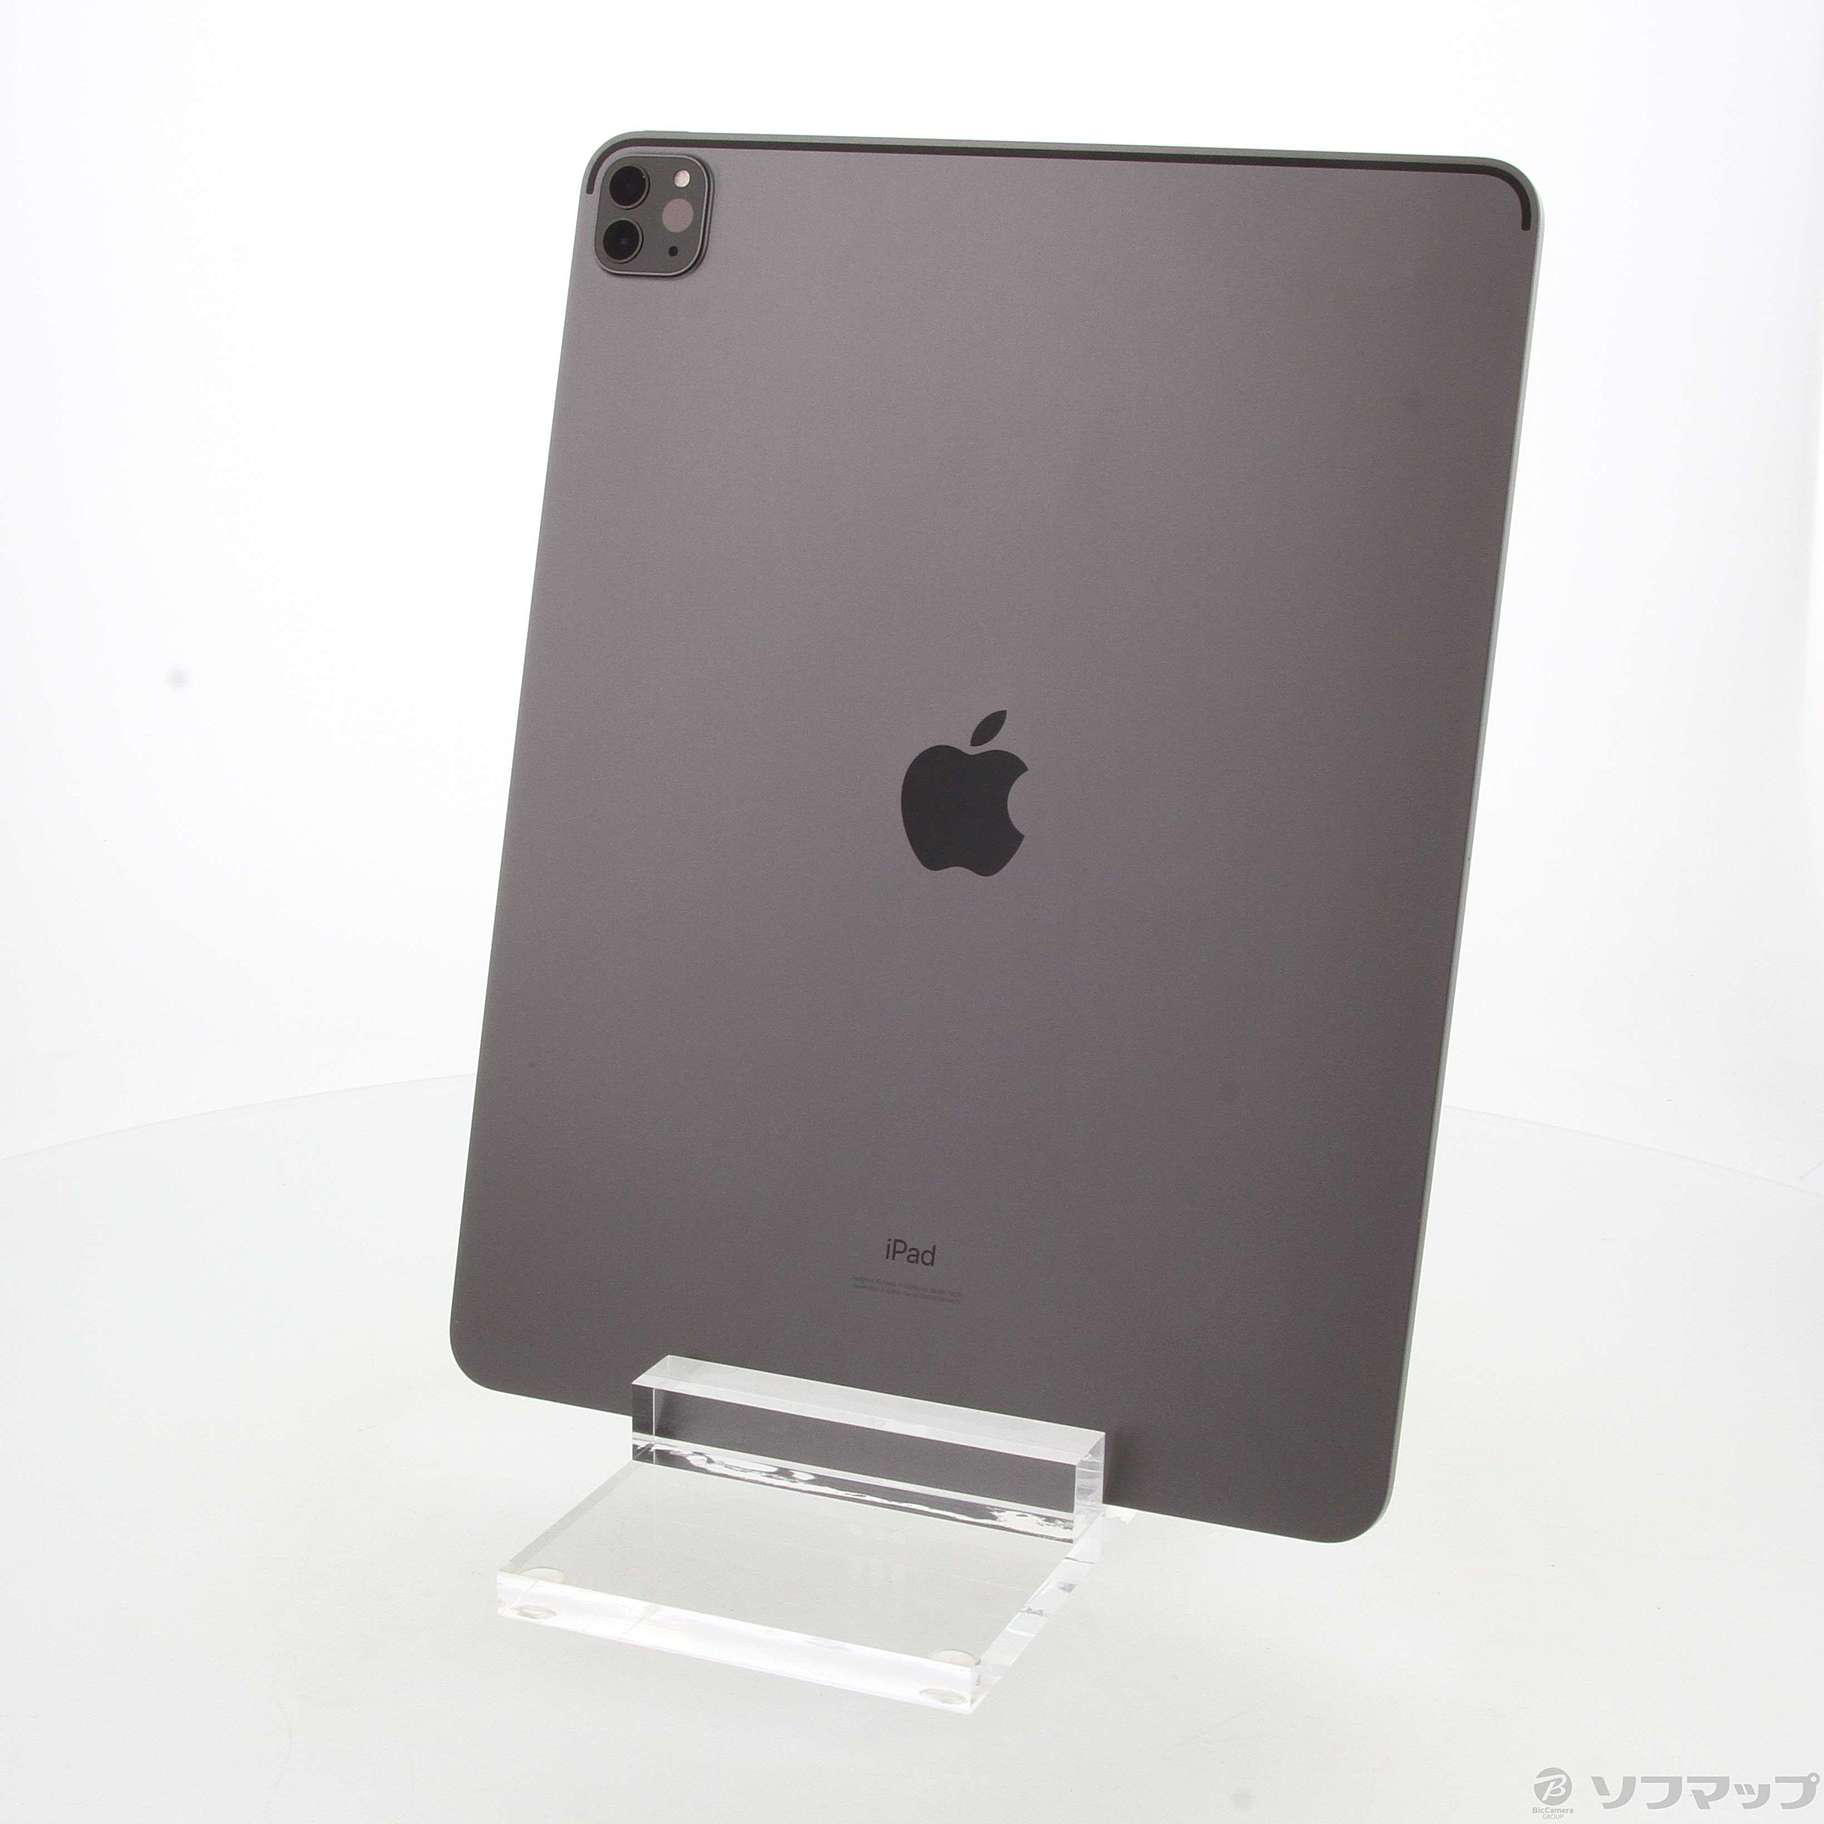 【１着でも送料無料】 Pro iPad (第4世代) スペースグレイ 1TB 12.9インチ タブレット